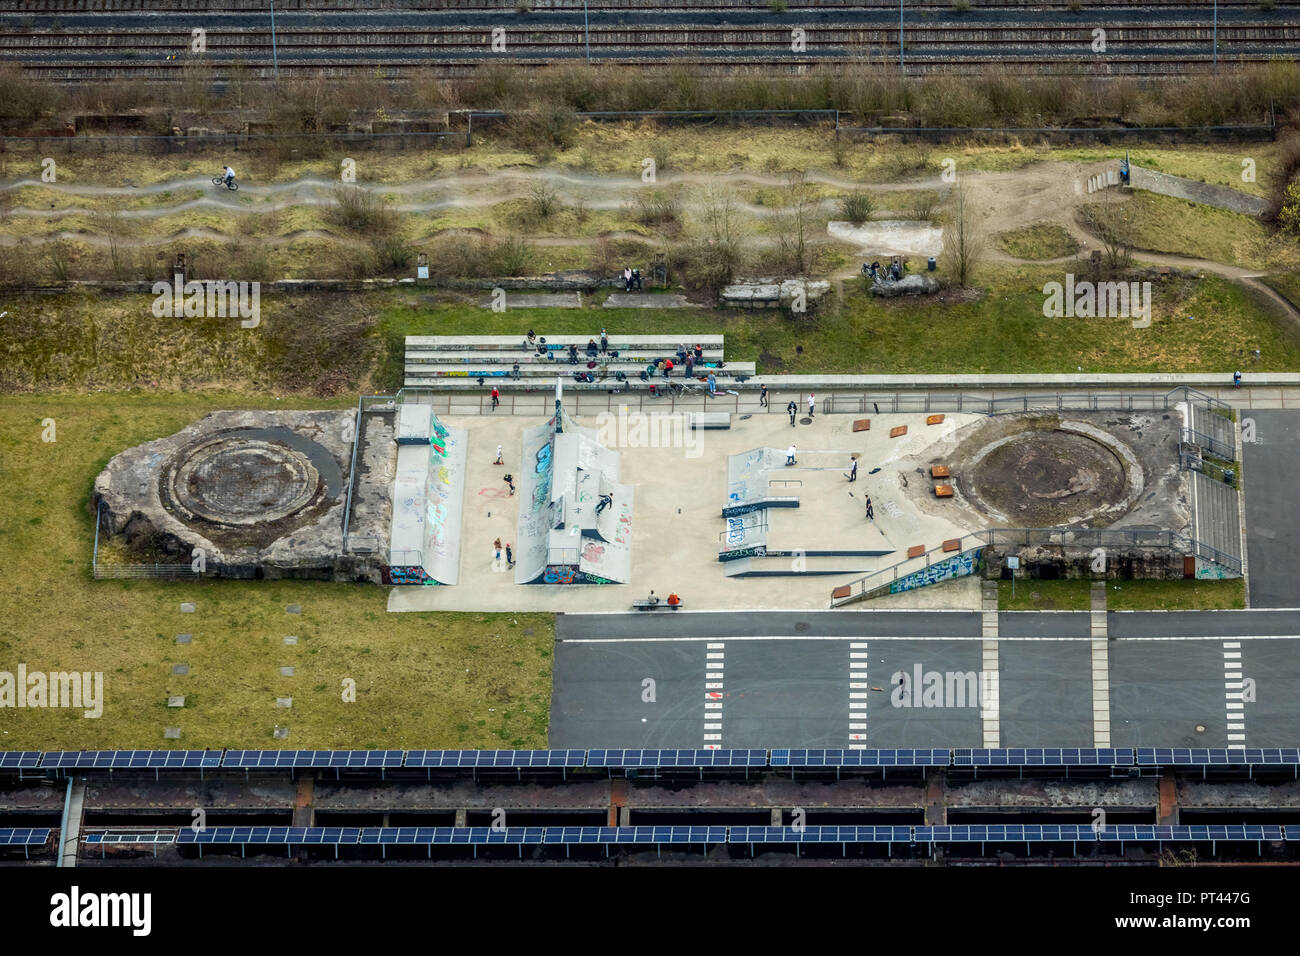 Skatepark Schalkerverein auf dem Gelände des ehemaligen Stahlwerks Schalker Verein in Gelsenkirchen, Ruhrgebiet, Nordrhein-Westfalen, Deutschland Stockfoto